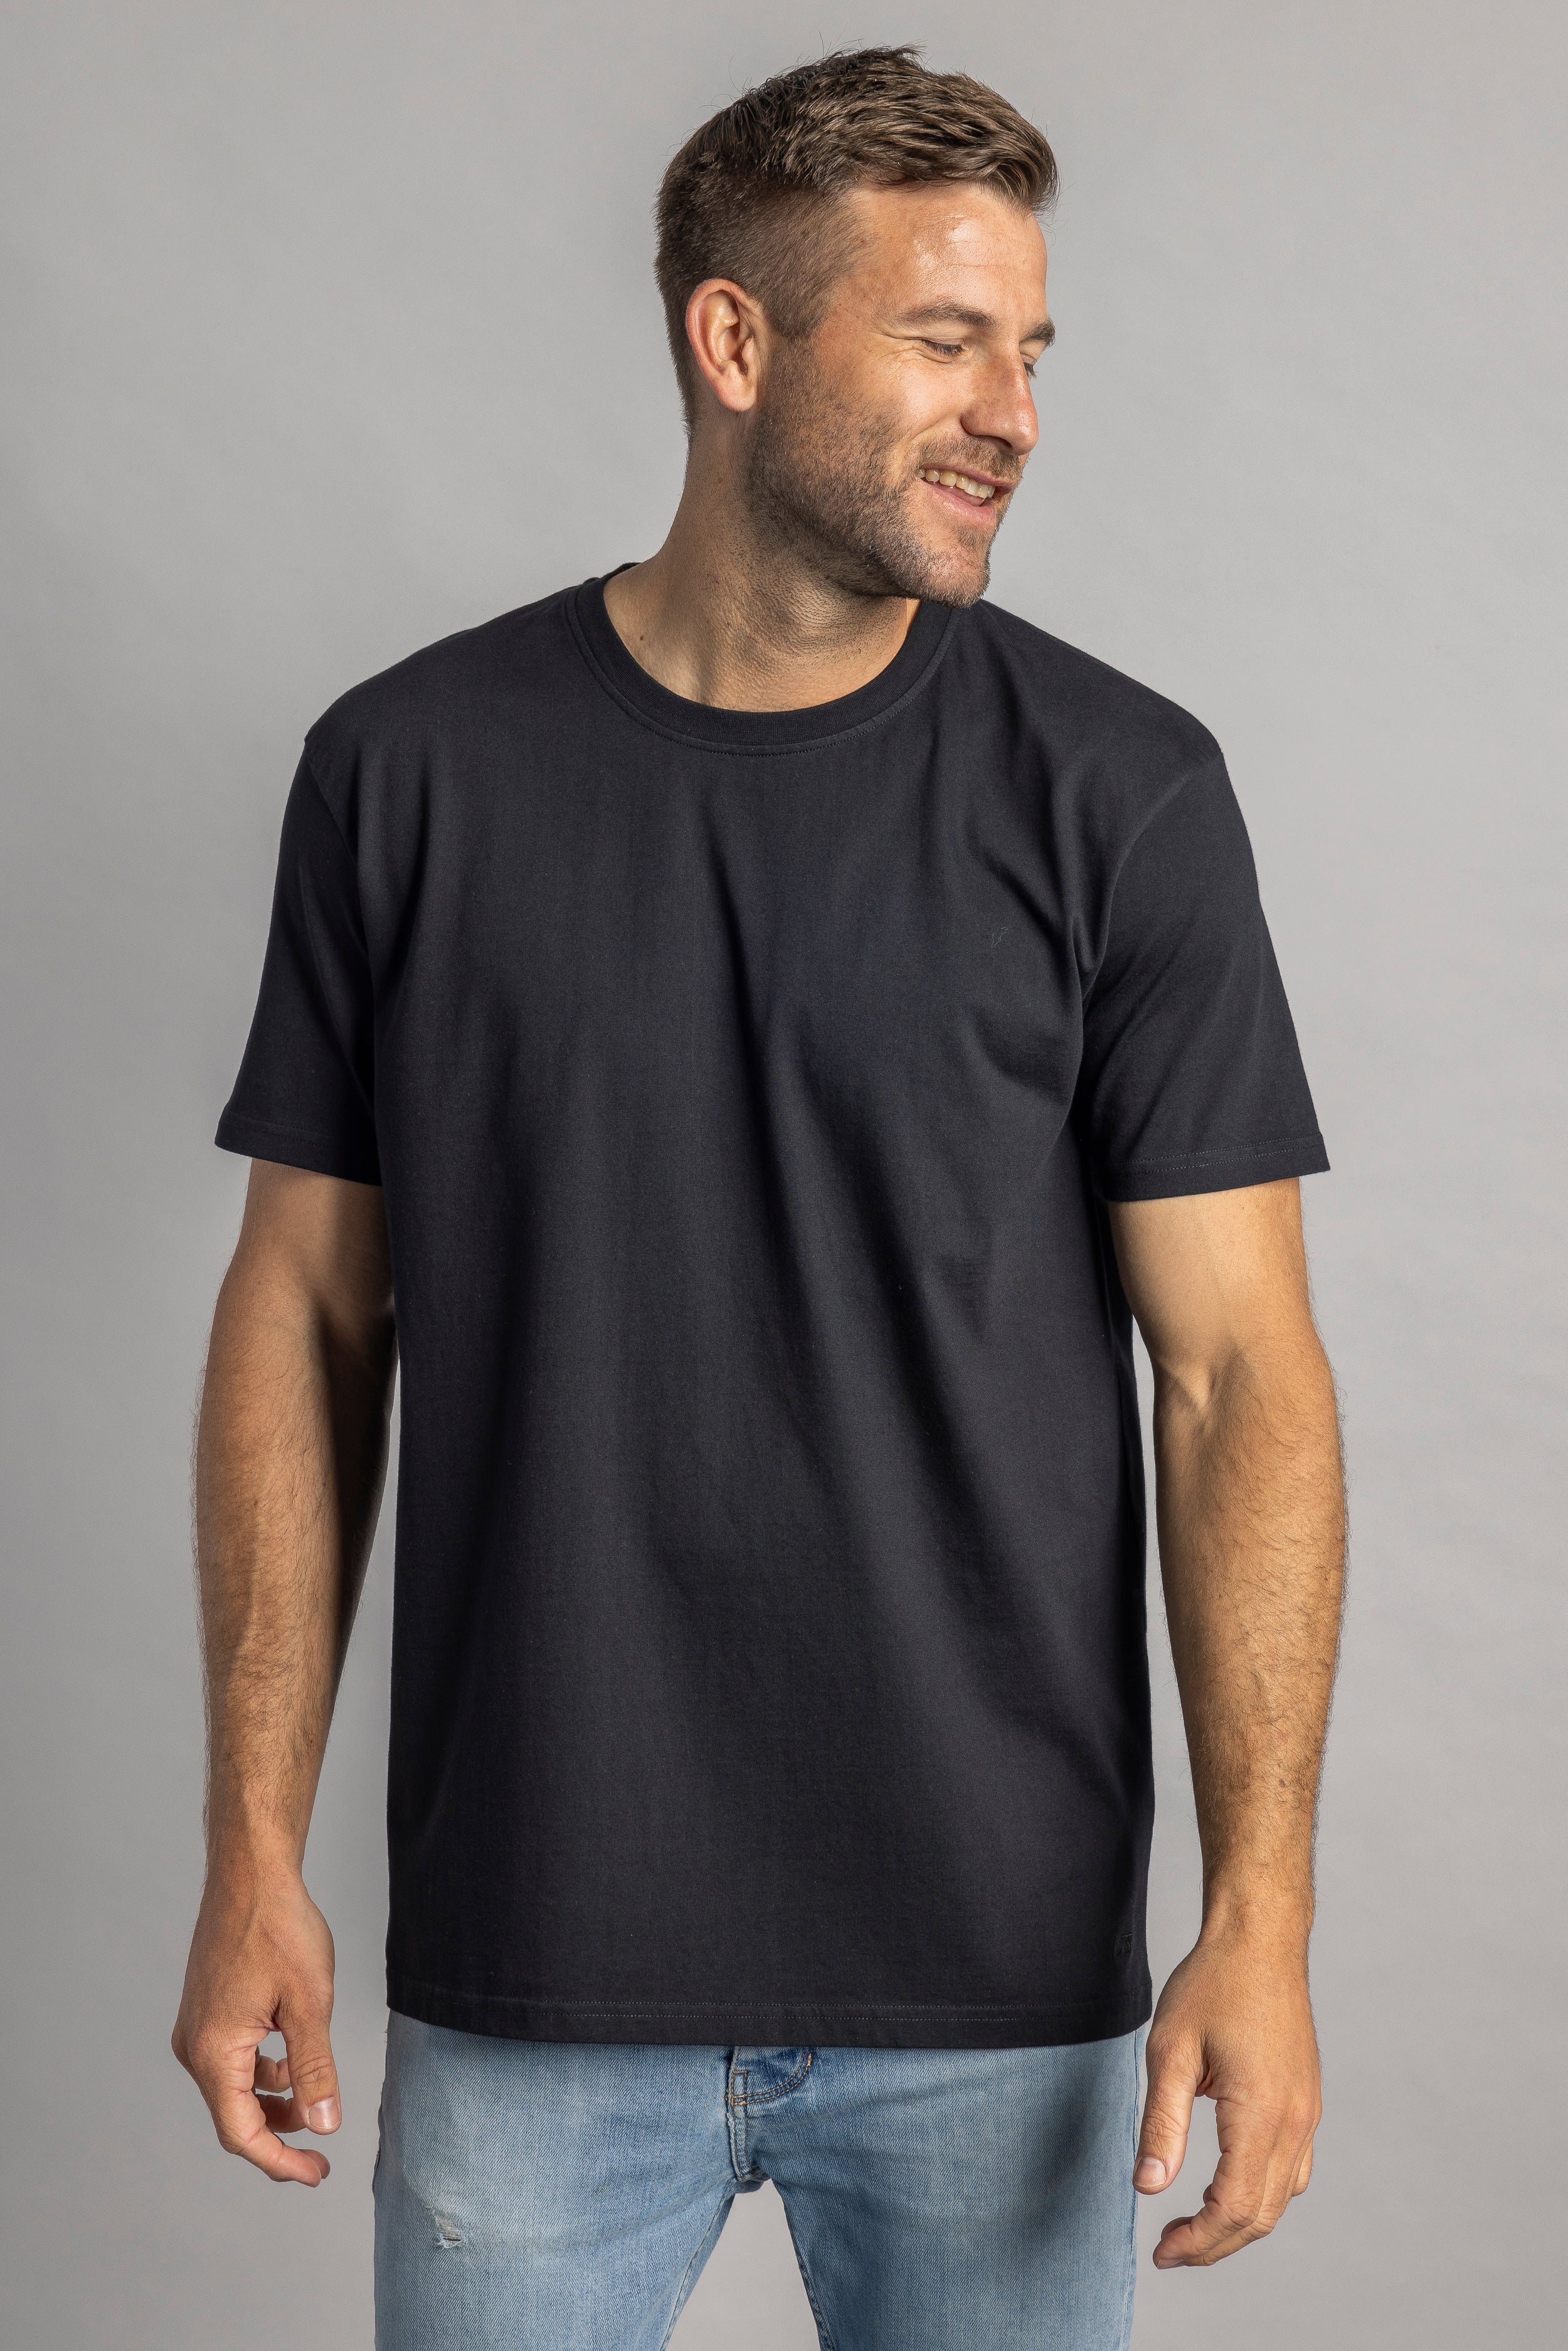 T-shirt noir Premium Blank Standard en coton 100% biologique de DIRTS